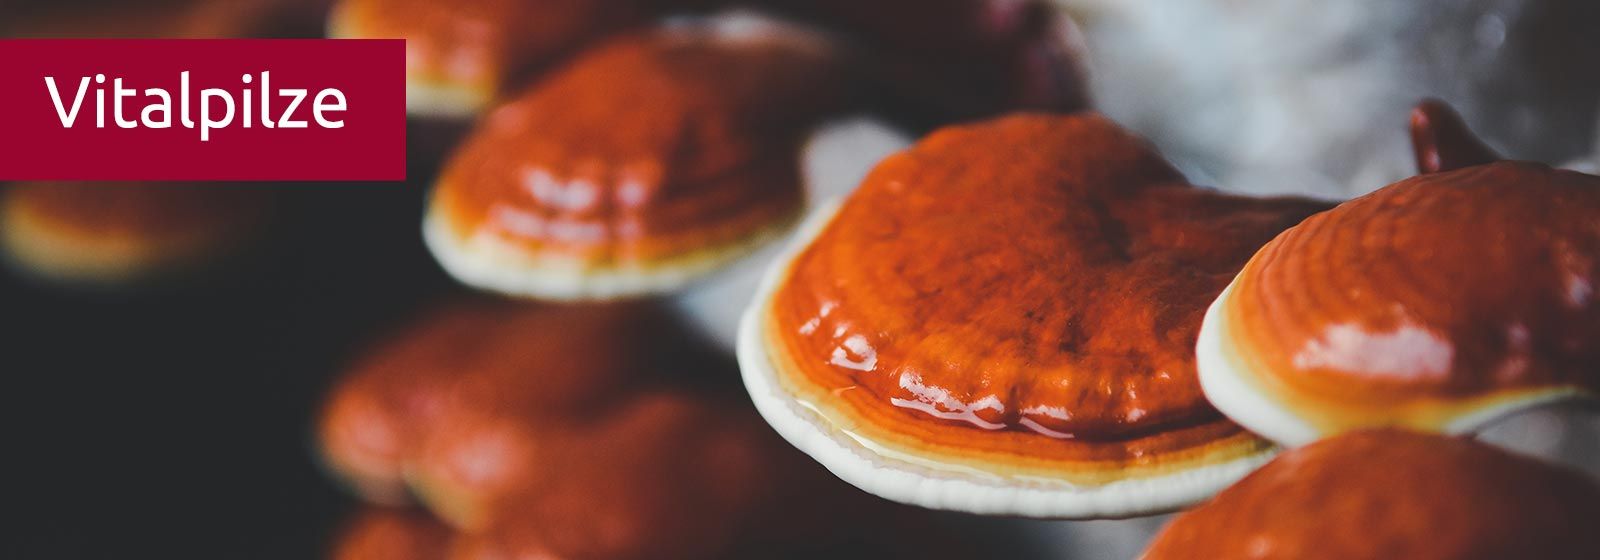 Ein Reishikultur: orangebraune Scheiben mit weissem Rand wachsen dicht aneinander